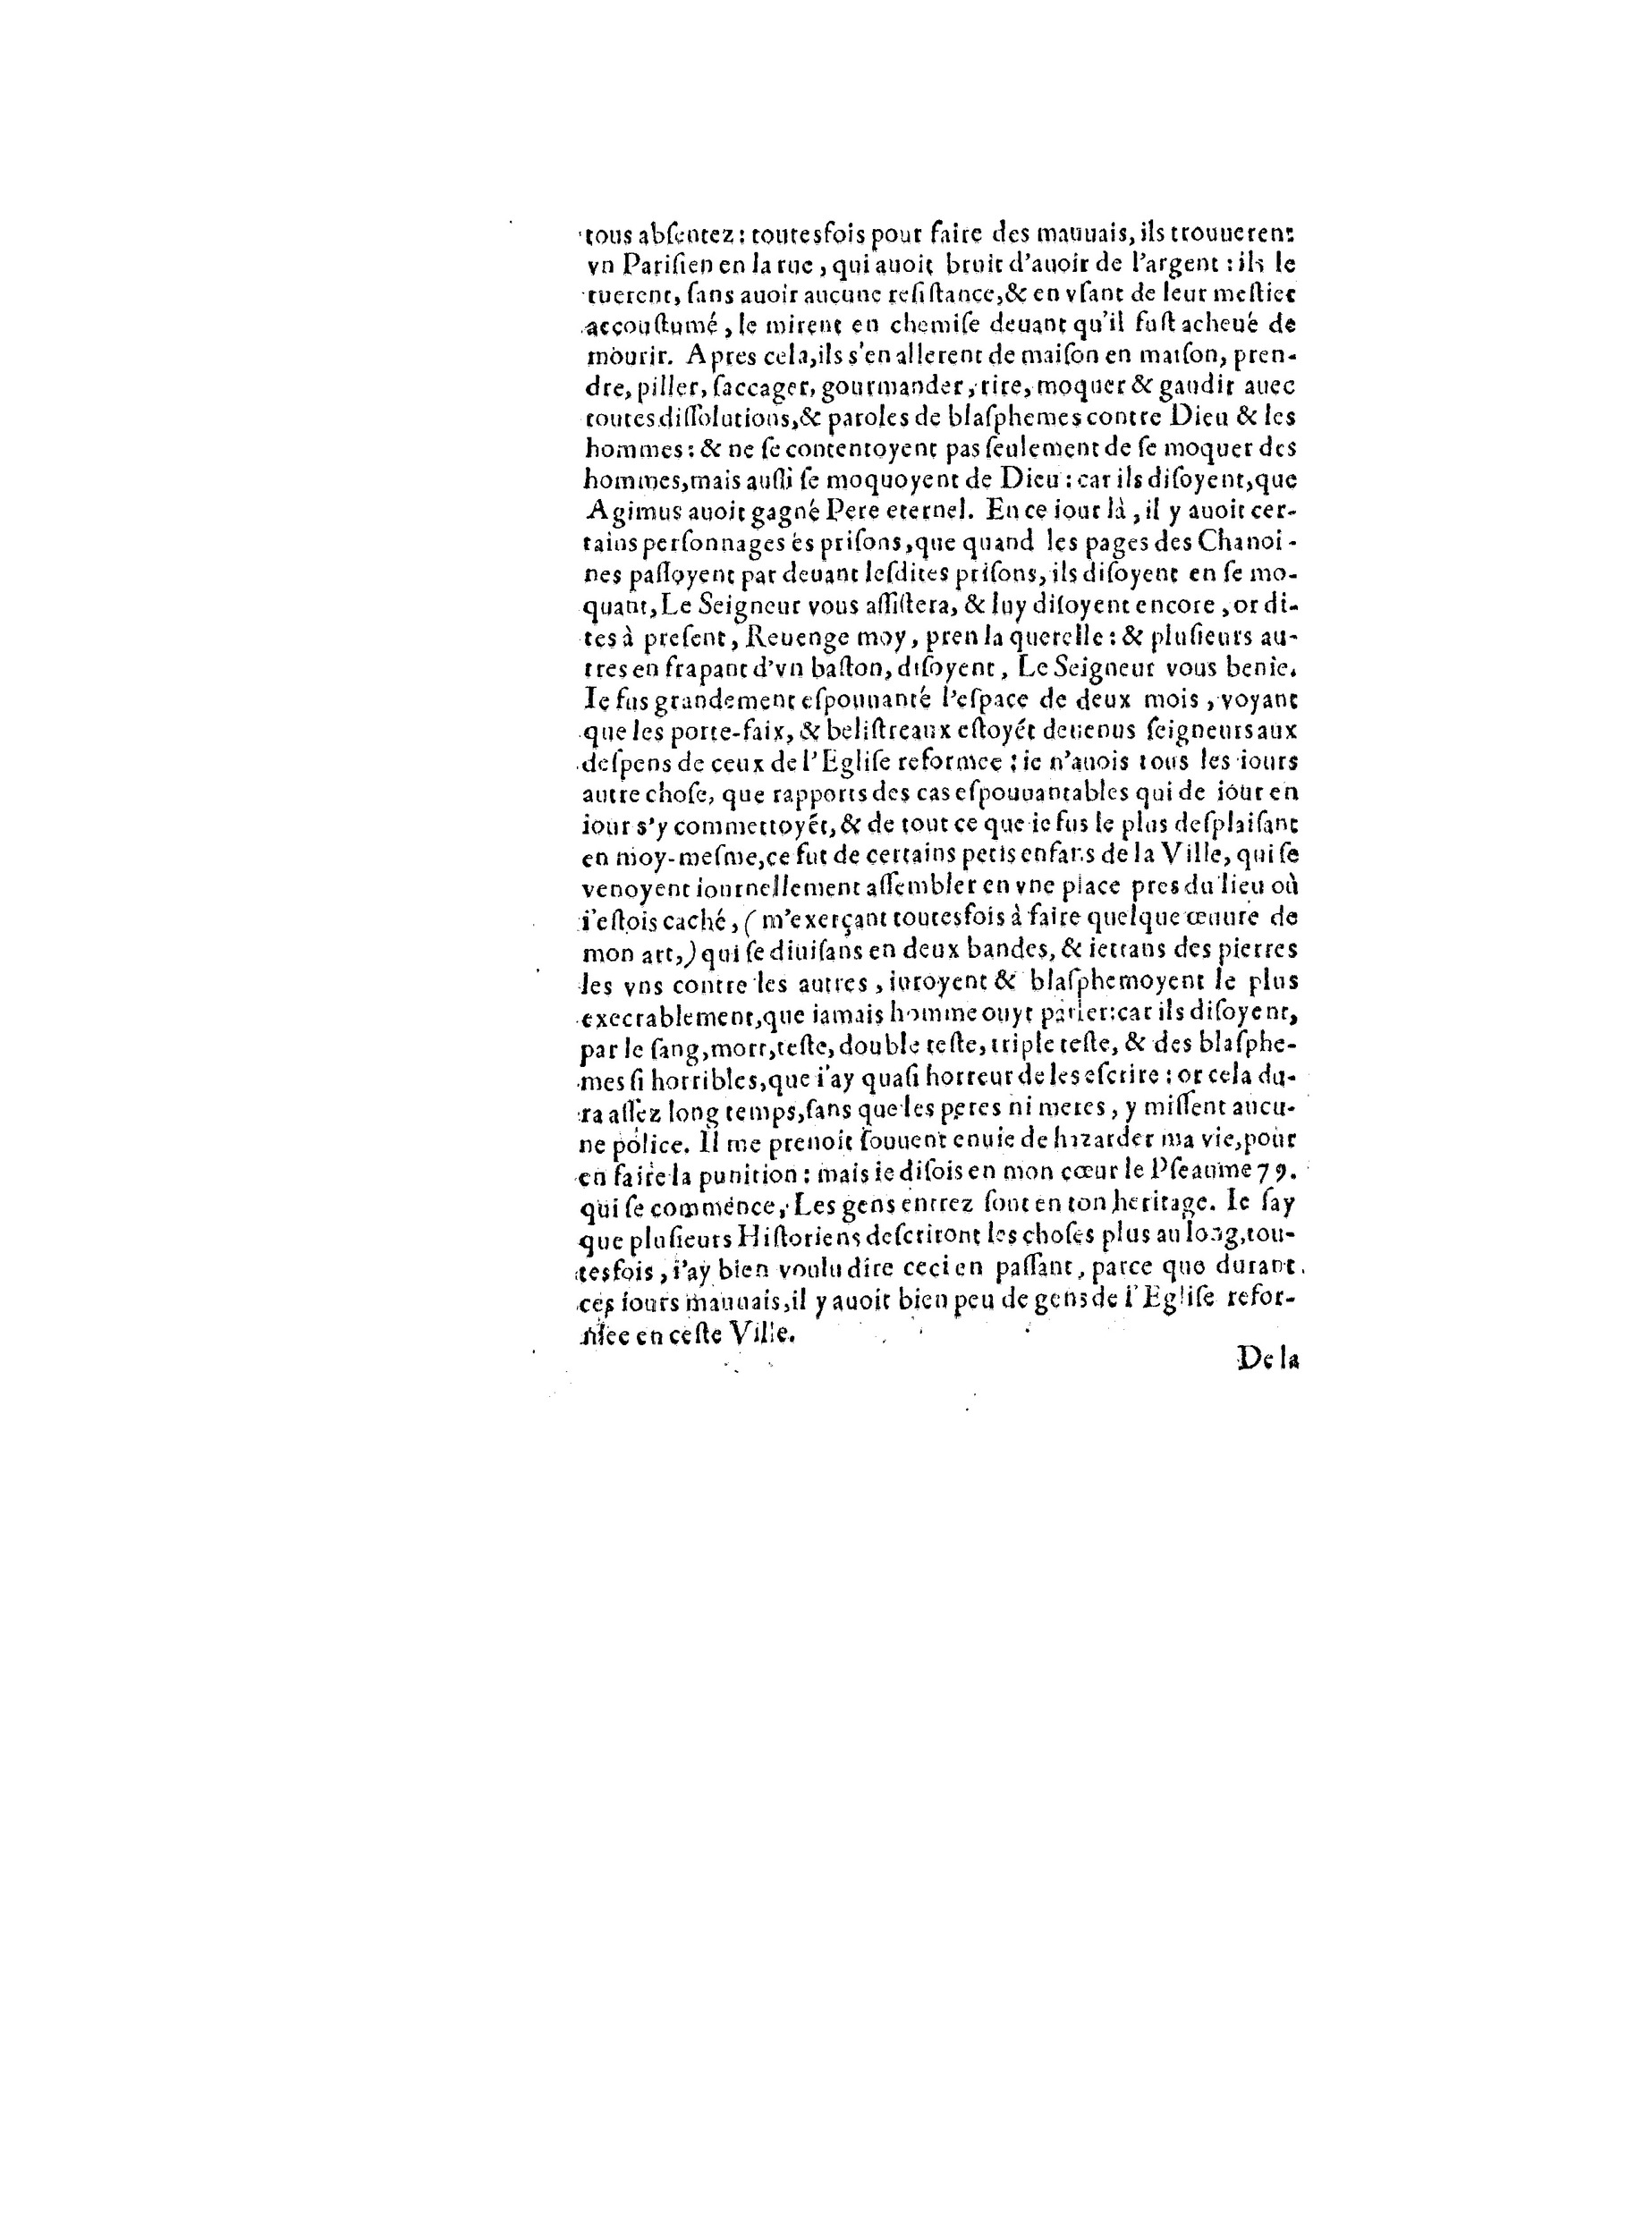 1563 Recepte veritable Berton_BNF_Page_119.jpg